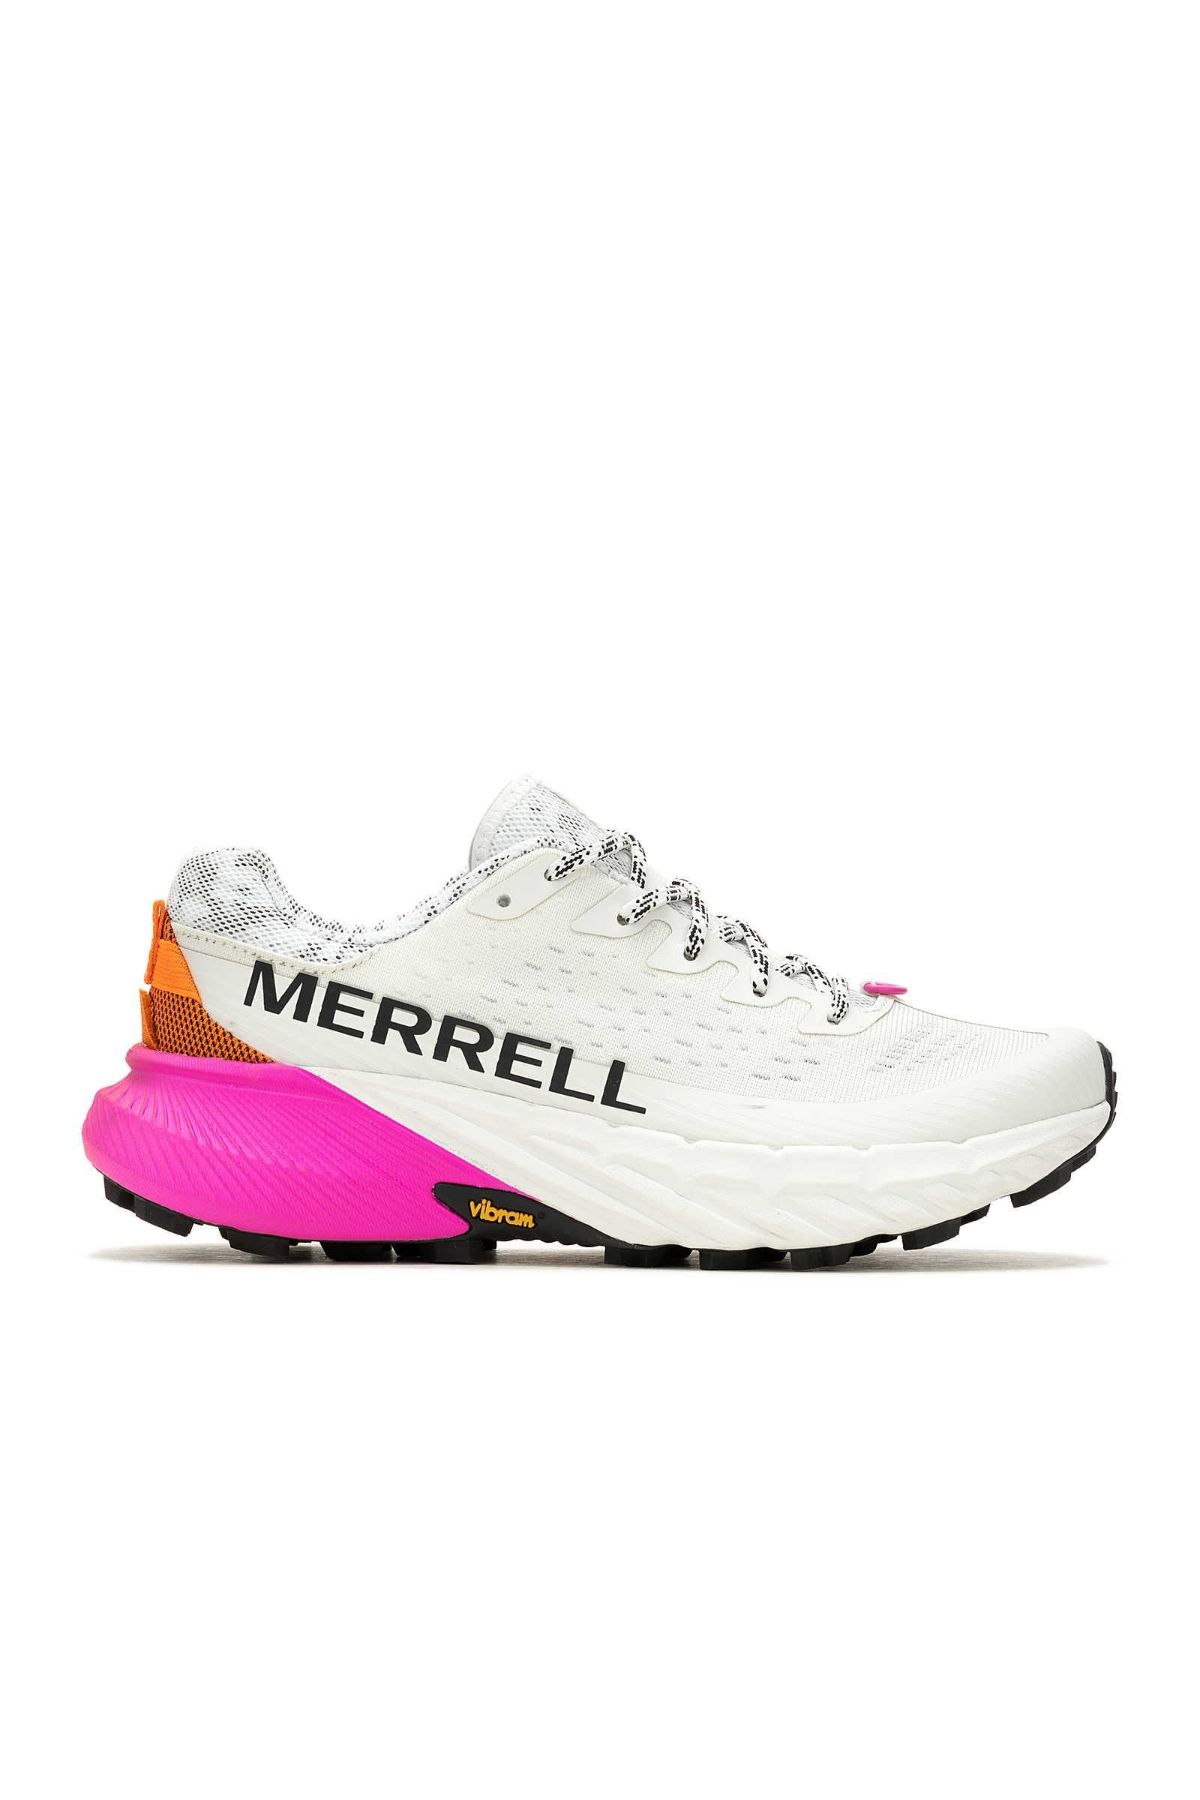 Merrell J068234 Agılıty Peak 5 Kadın Spor Ayakkabısı Beyaz Pembe